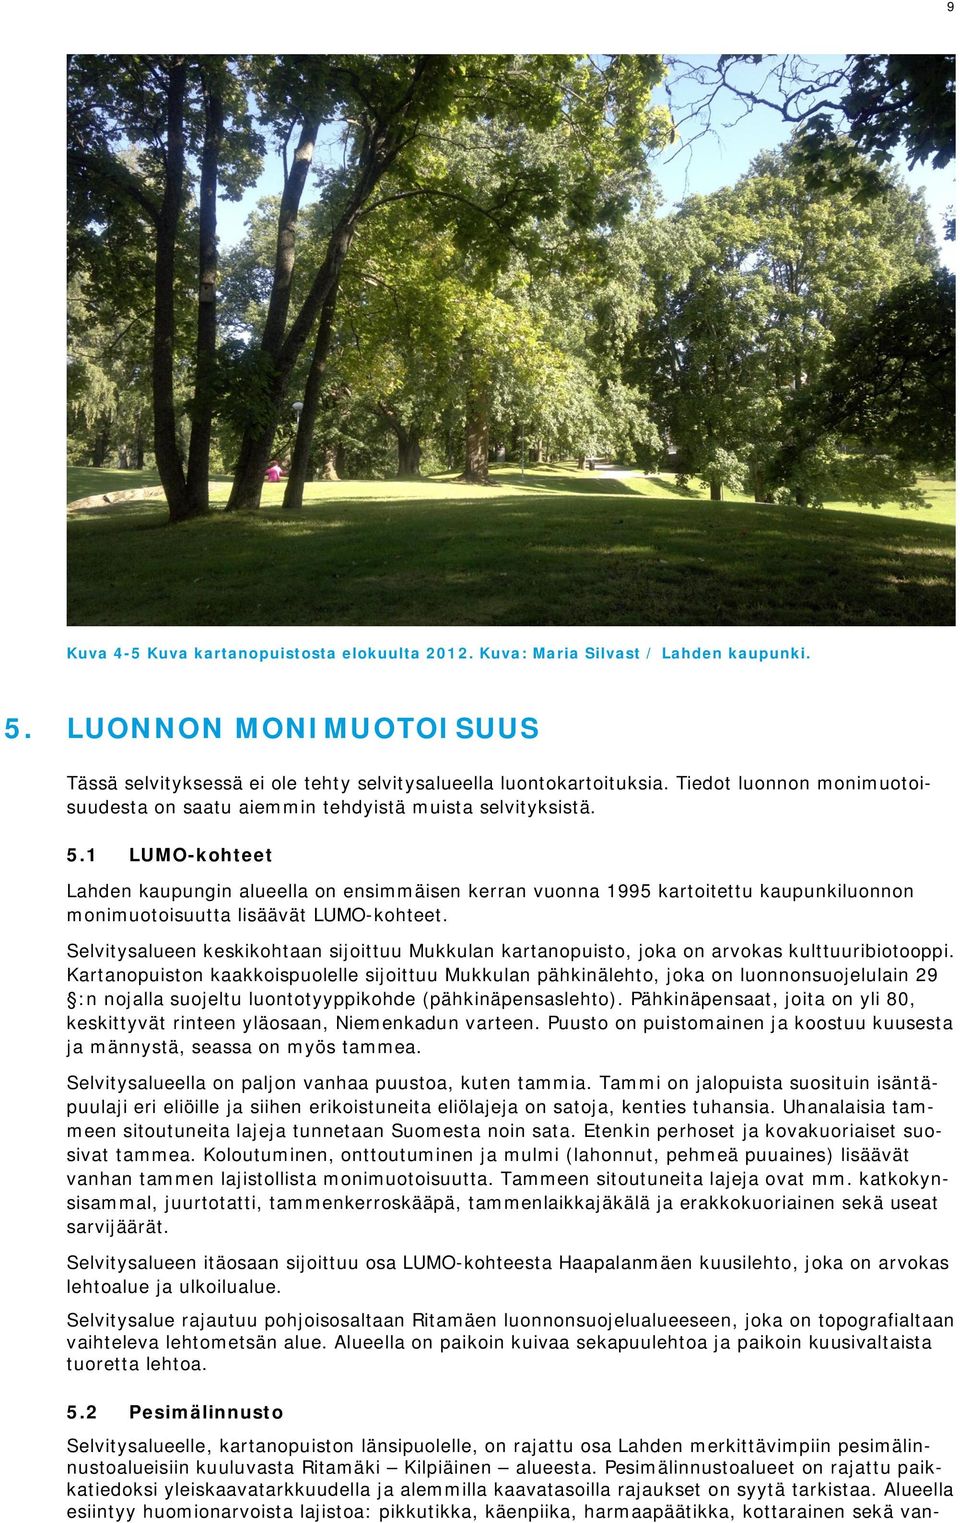 1 LUMO-kohteet Lahden kaupungin alueella on ensimmäisen kerran vuonna 1995 kartoitettu kaupunkiluonnon monimuotoisuutta lisäävät LUMO-kohteet.